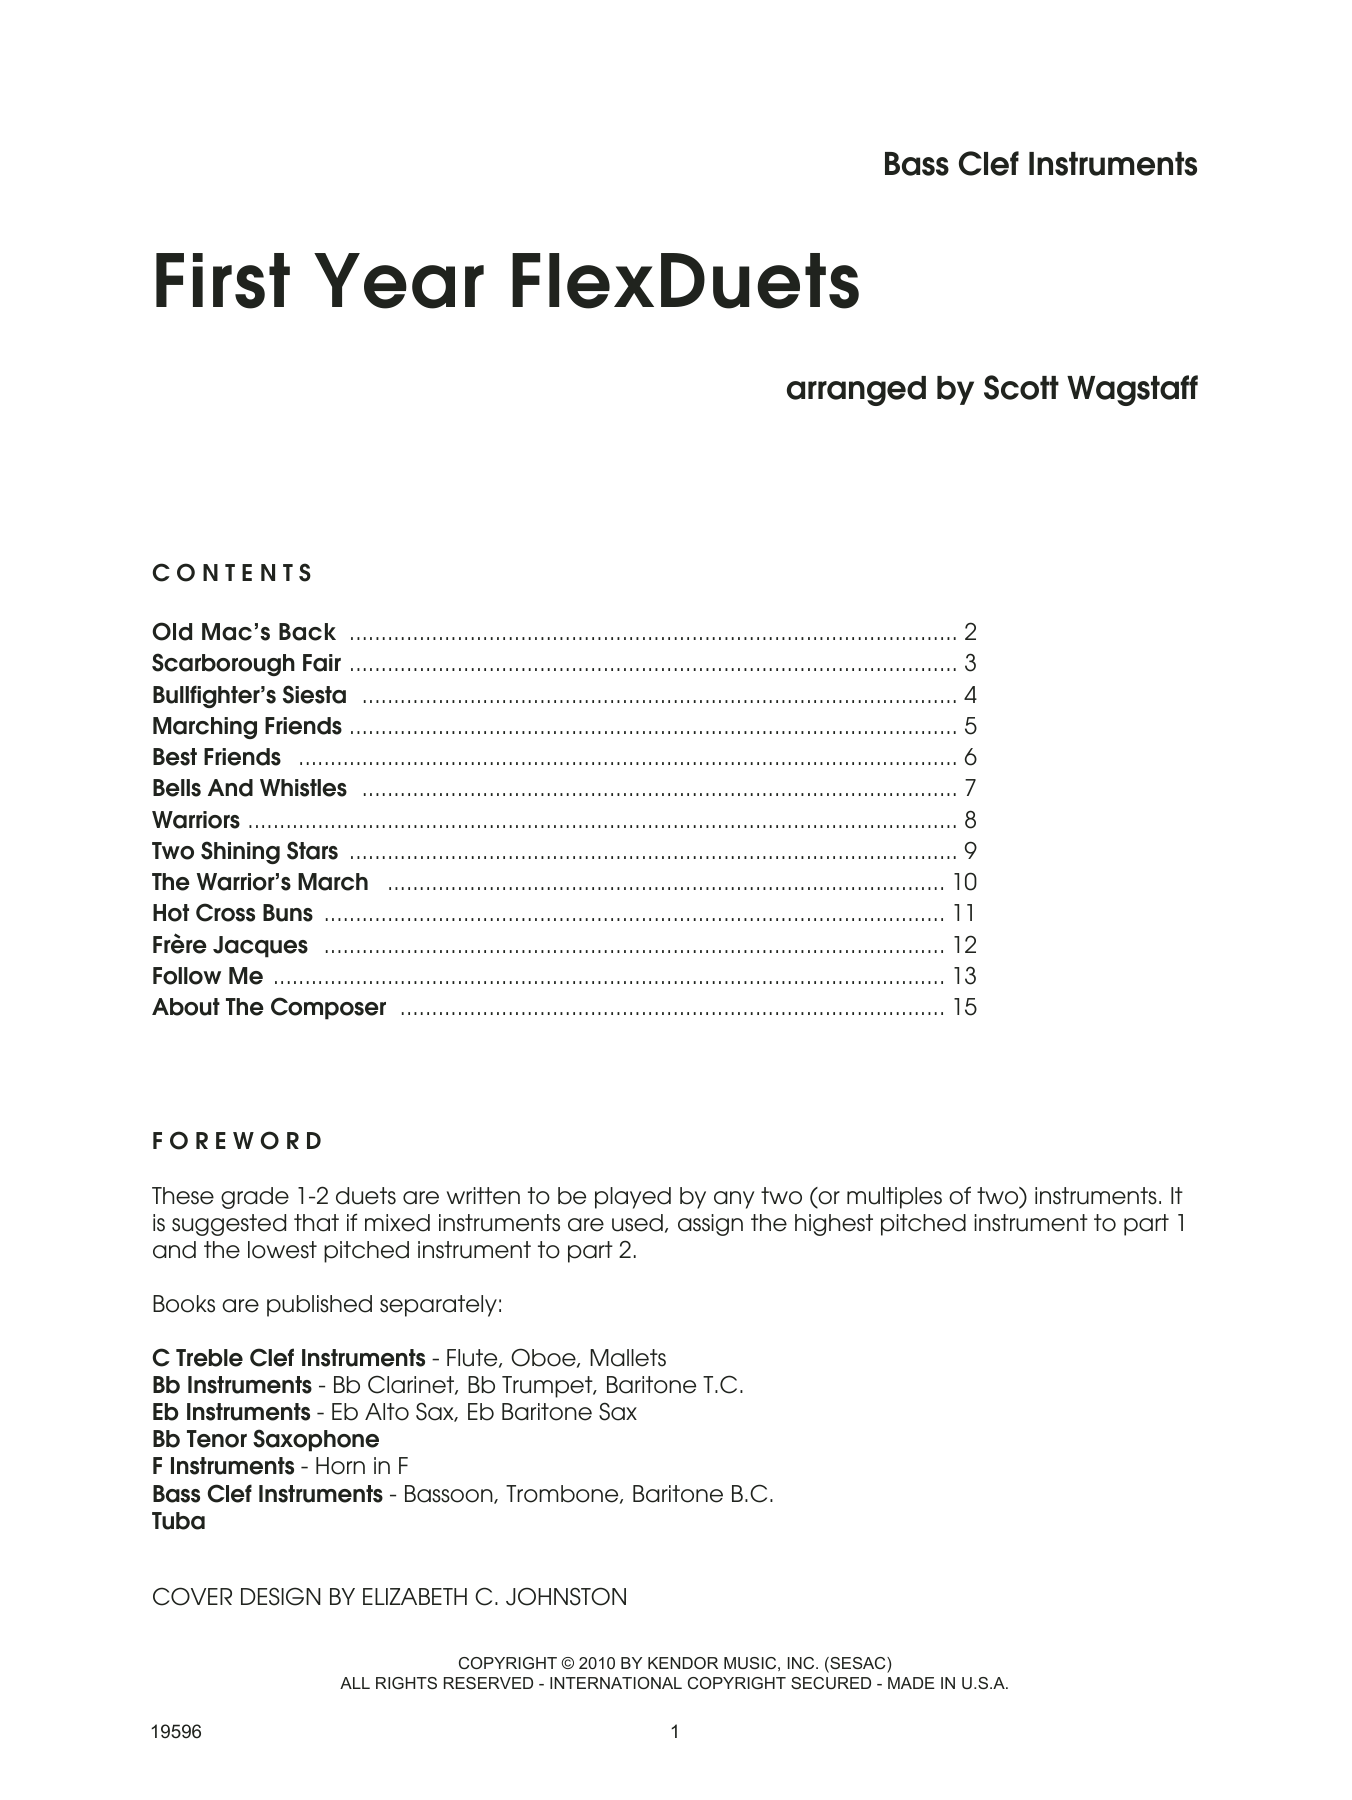 Download Scott Wagstaff First Year FlexDuets - Bass Clef Instru Sheet Music